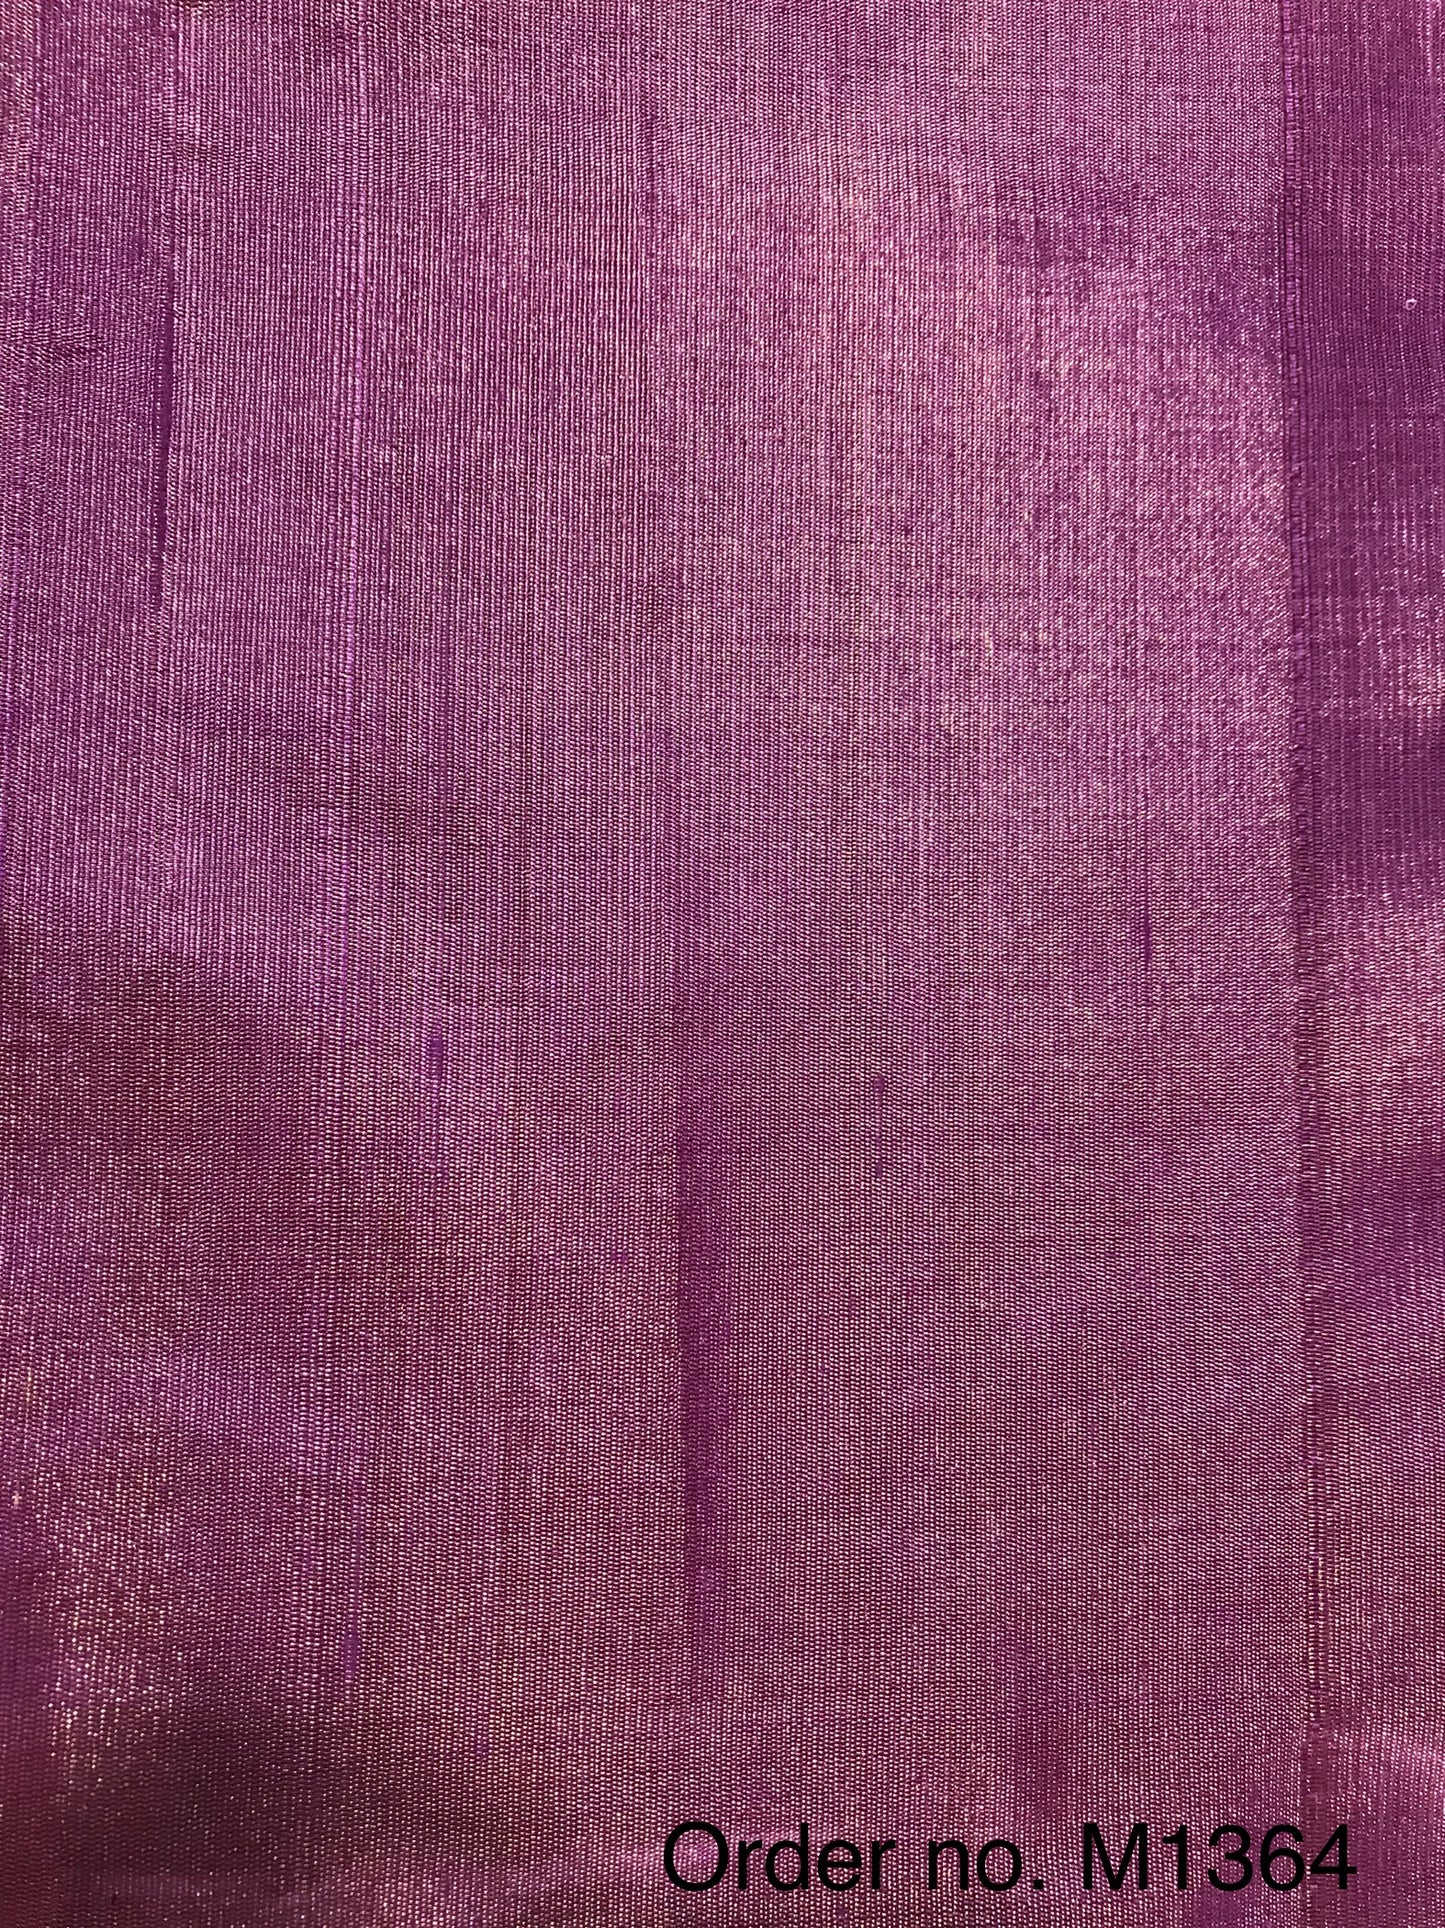 Tissue raw silk 105gm width 44”